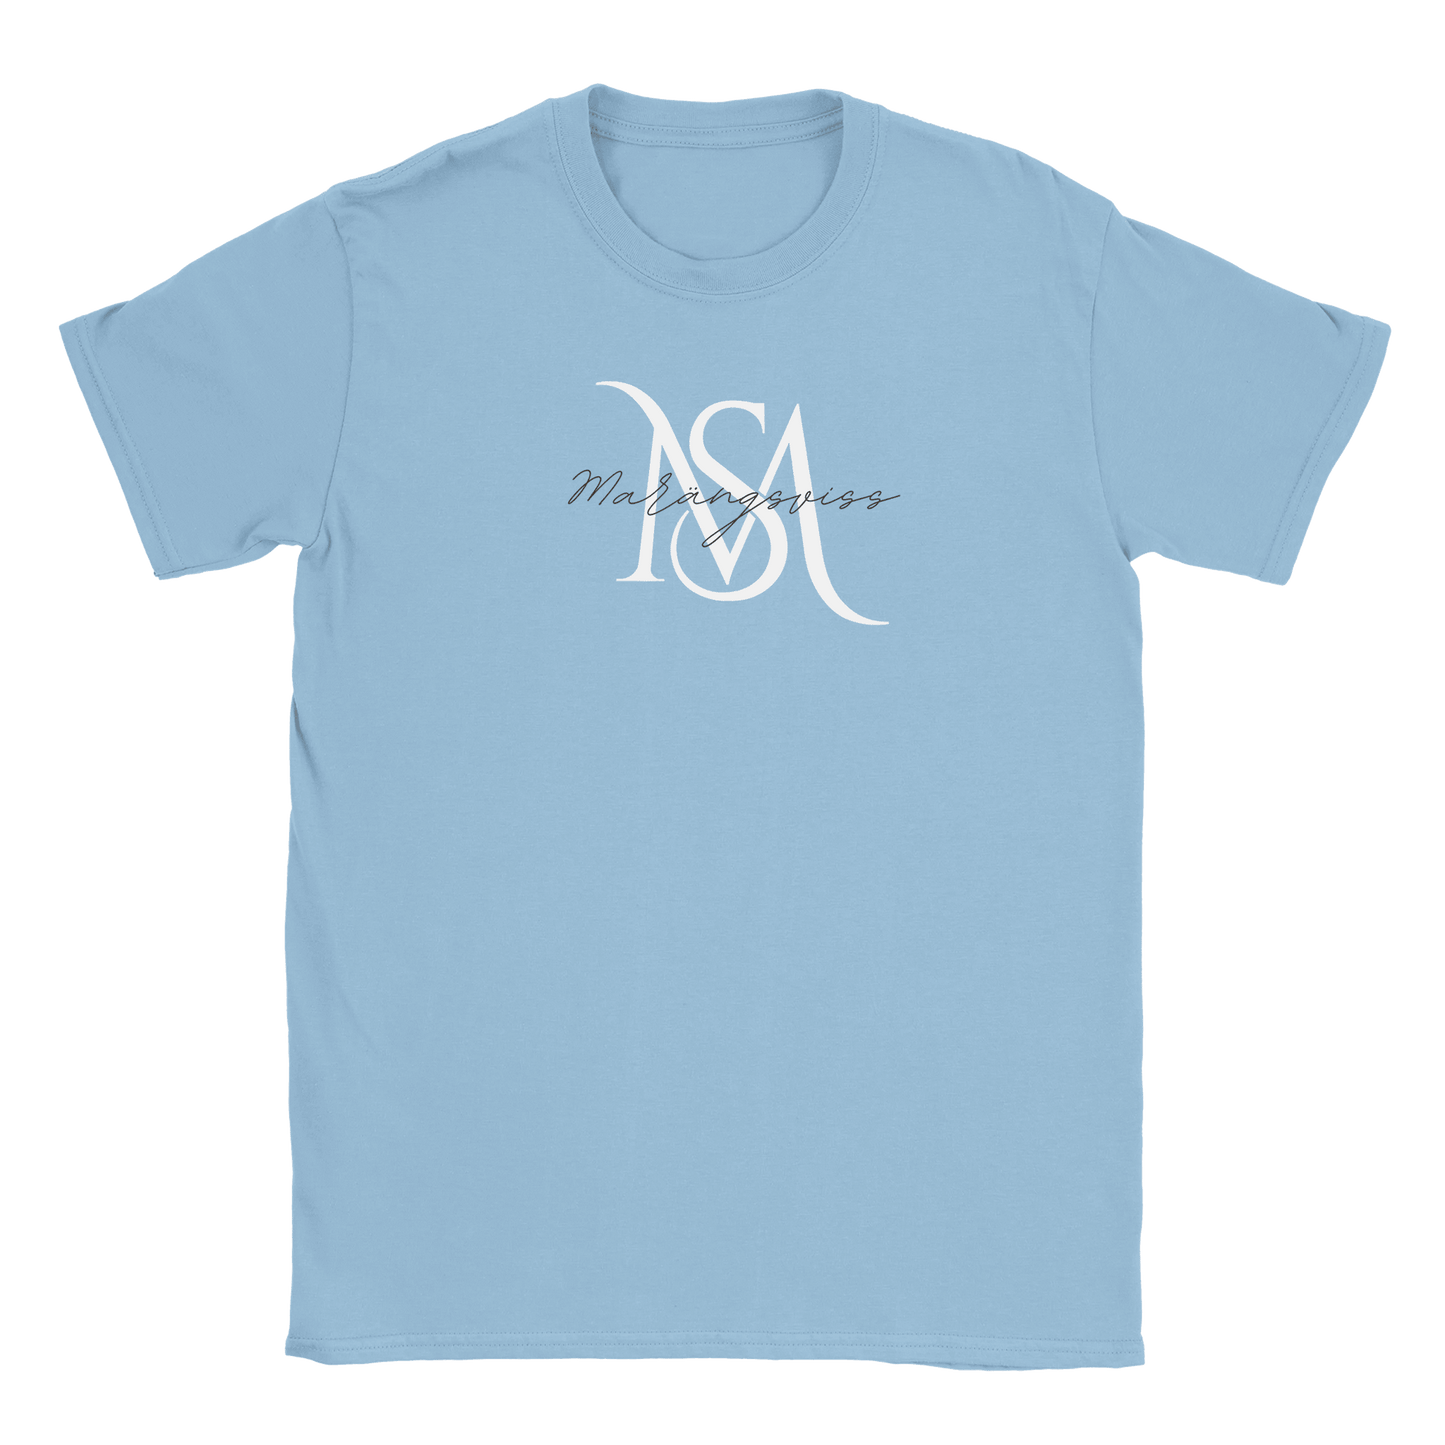 Marängsviss - T-shirt Light Blue